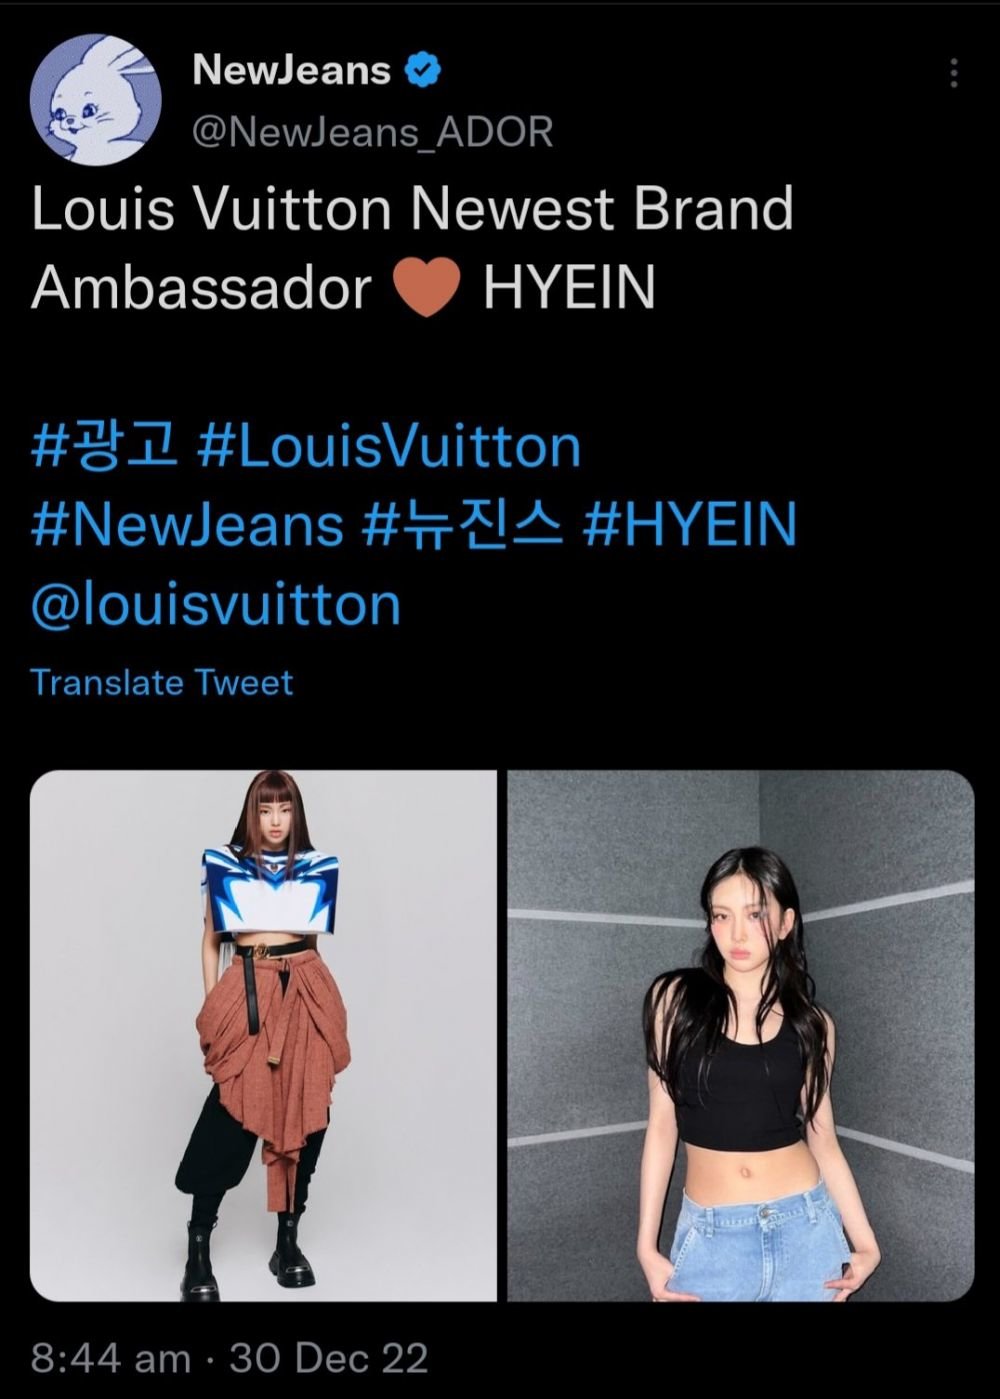 NewJeans's Hyein named Louis Vuitton brand ambassador